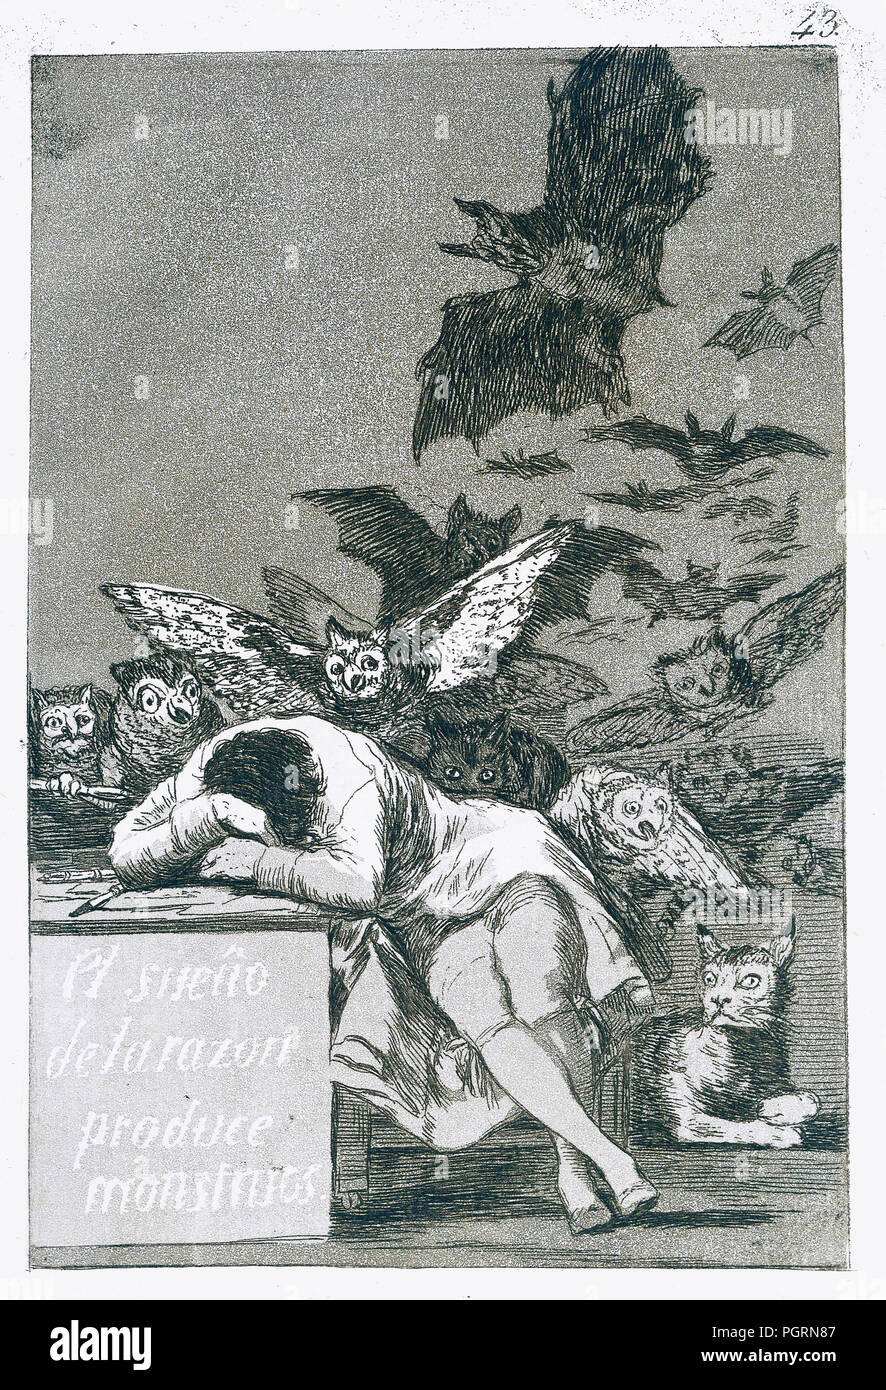 El Sueño De La Razon Produce Monstruos - The Dream of Reason Produces Monsters.  By Francisco de Goya, Number 43 from his series Los Caprichos Stock Photo